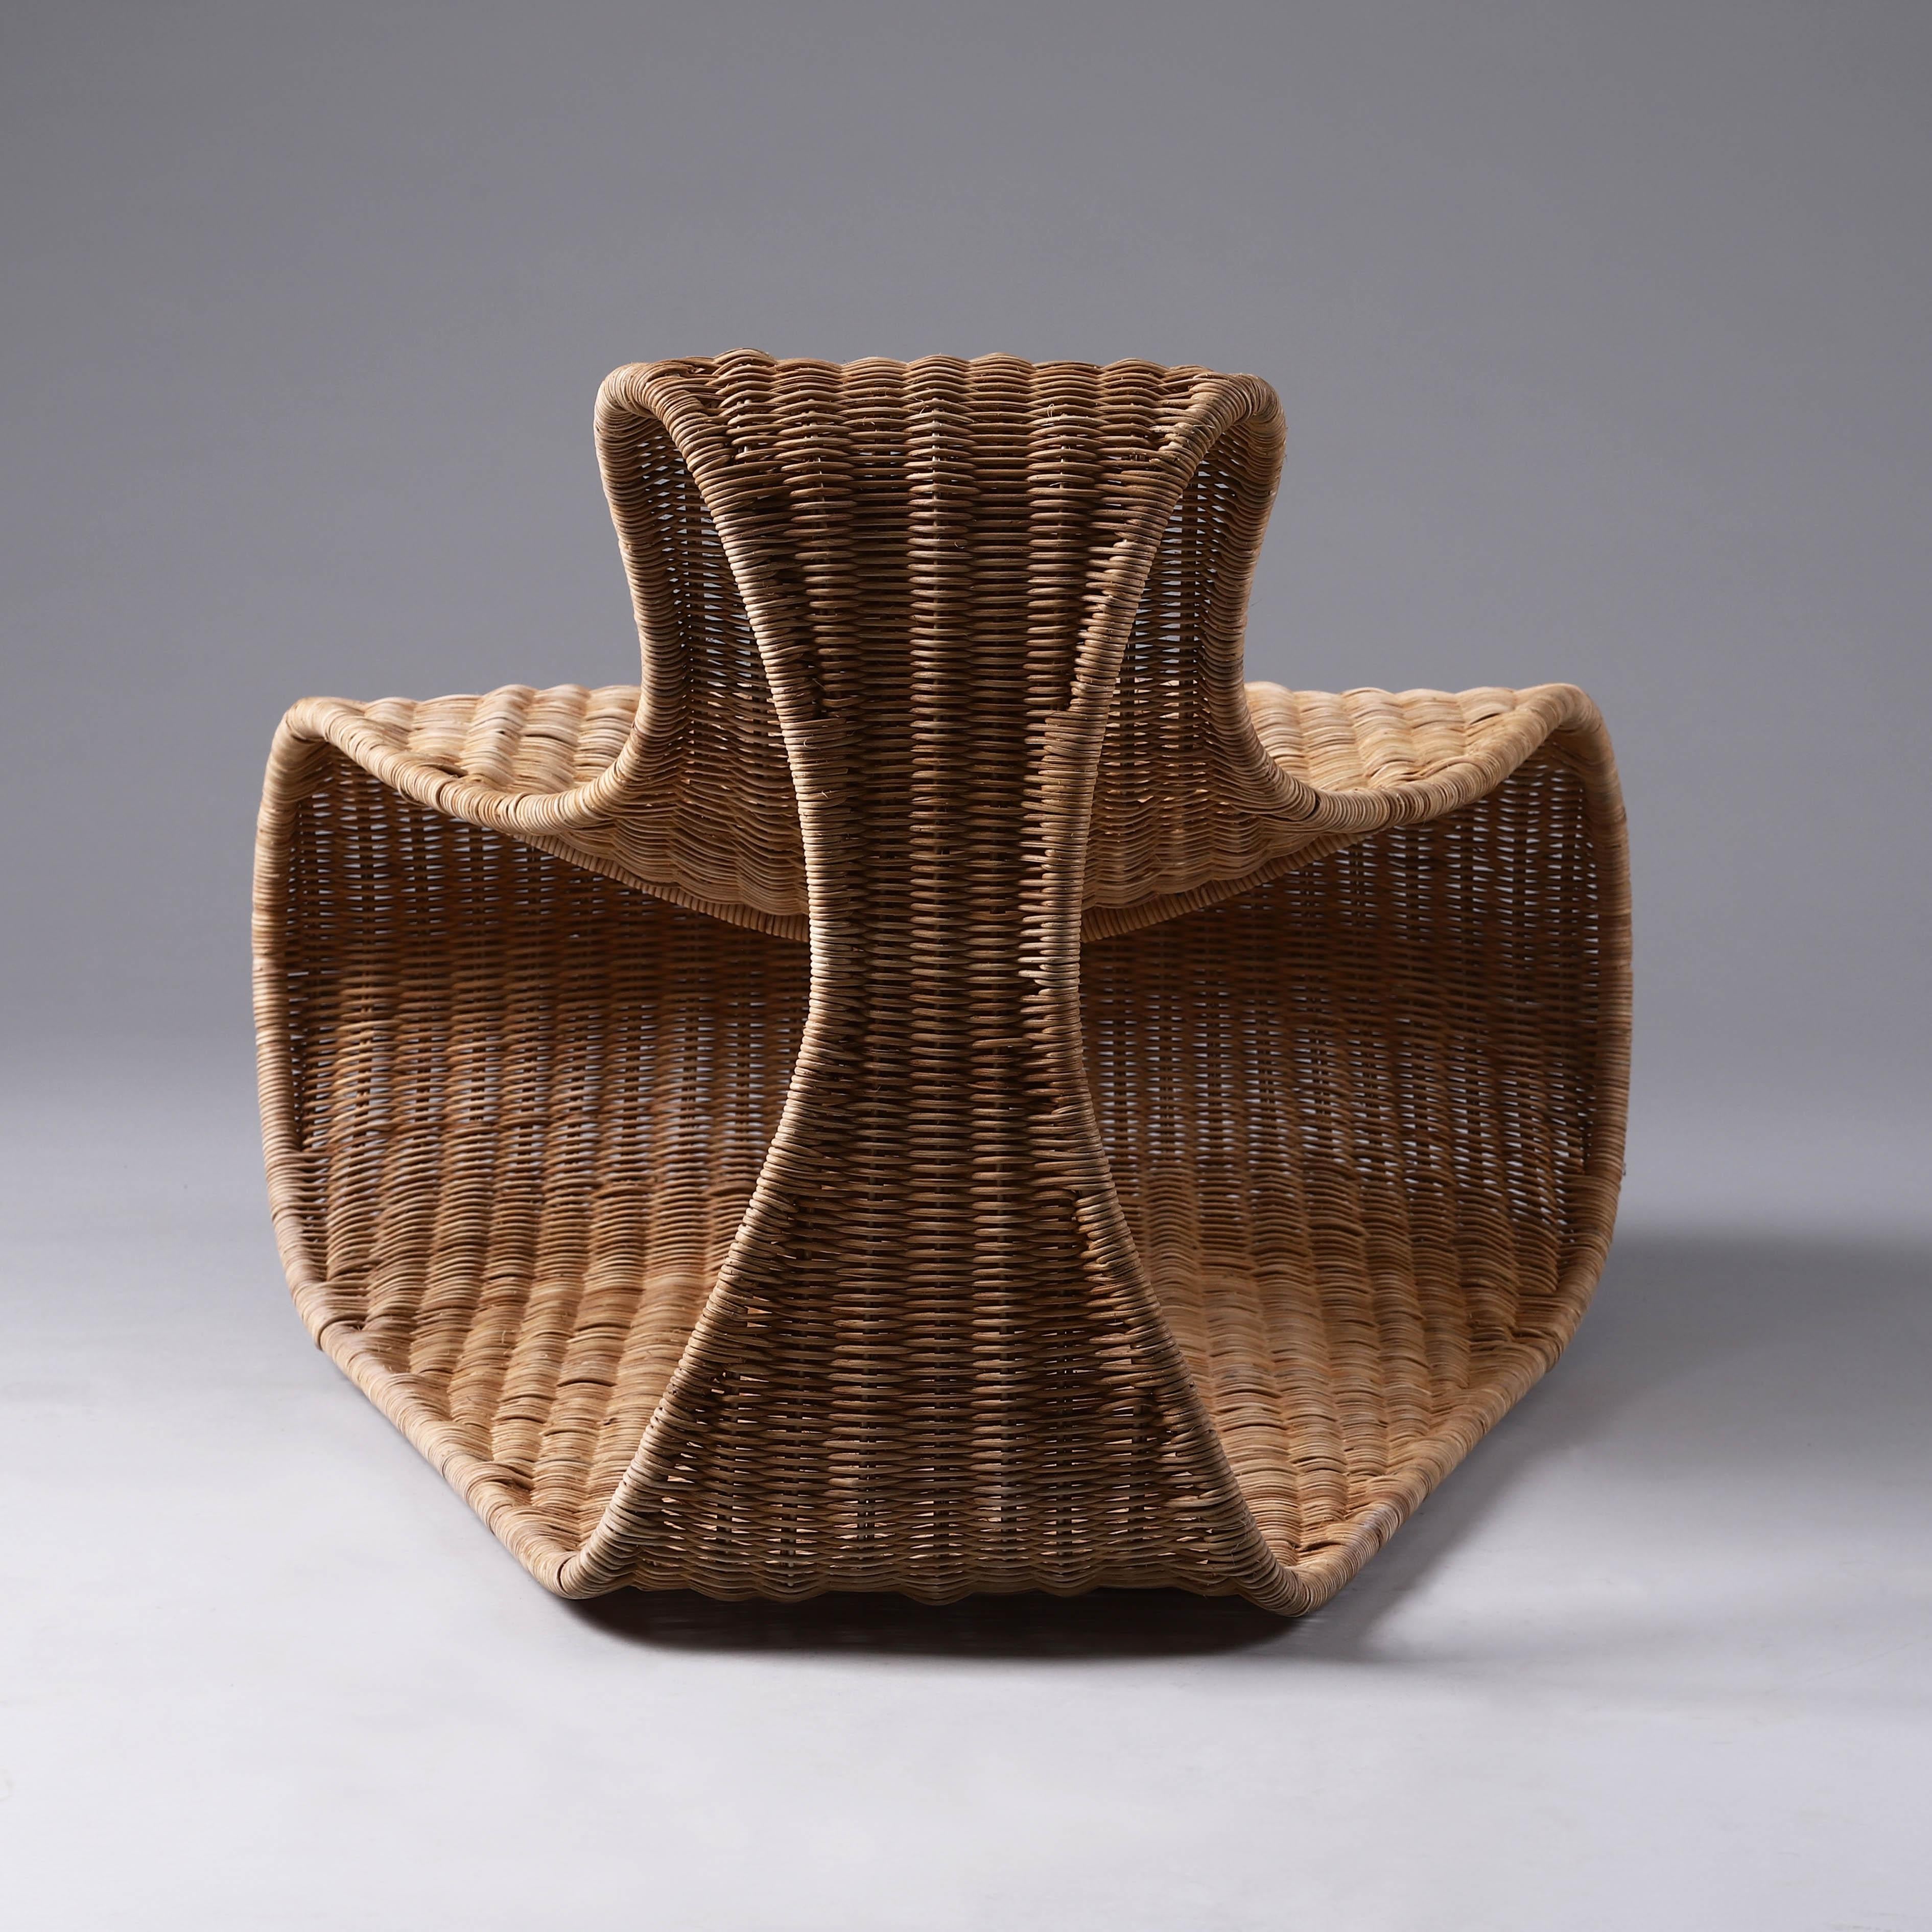 Voici la chaise longue Clara, l'une des dernières créations du talentueux designer Vito Selma. Faisant partie d'un trio de chaises longues d'exception, Clara se distingue par sa forme marquante et distinctive qui ne manquera pas de faire tourner les